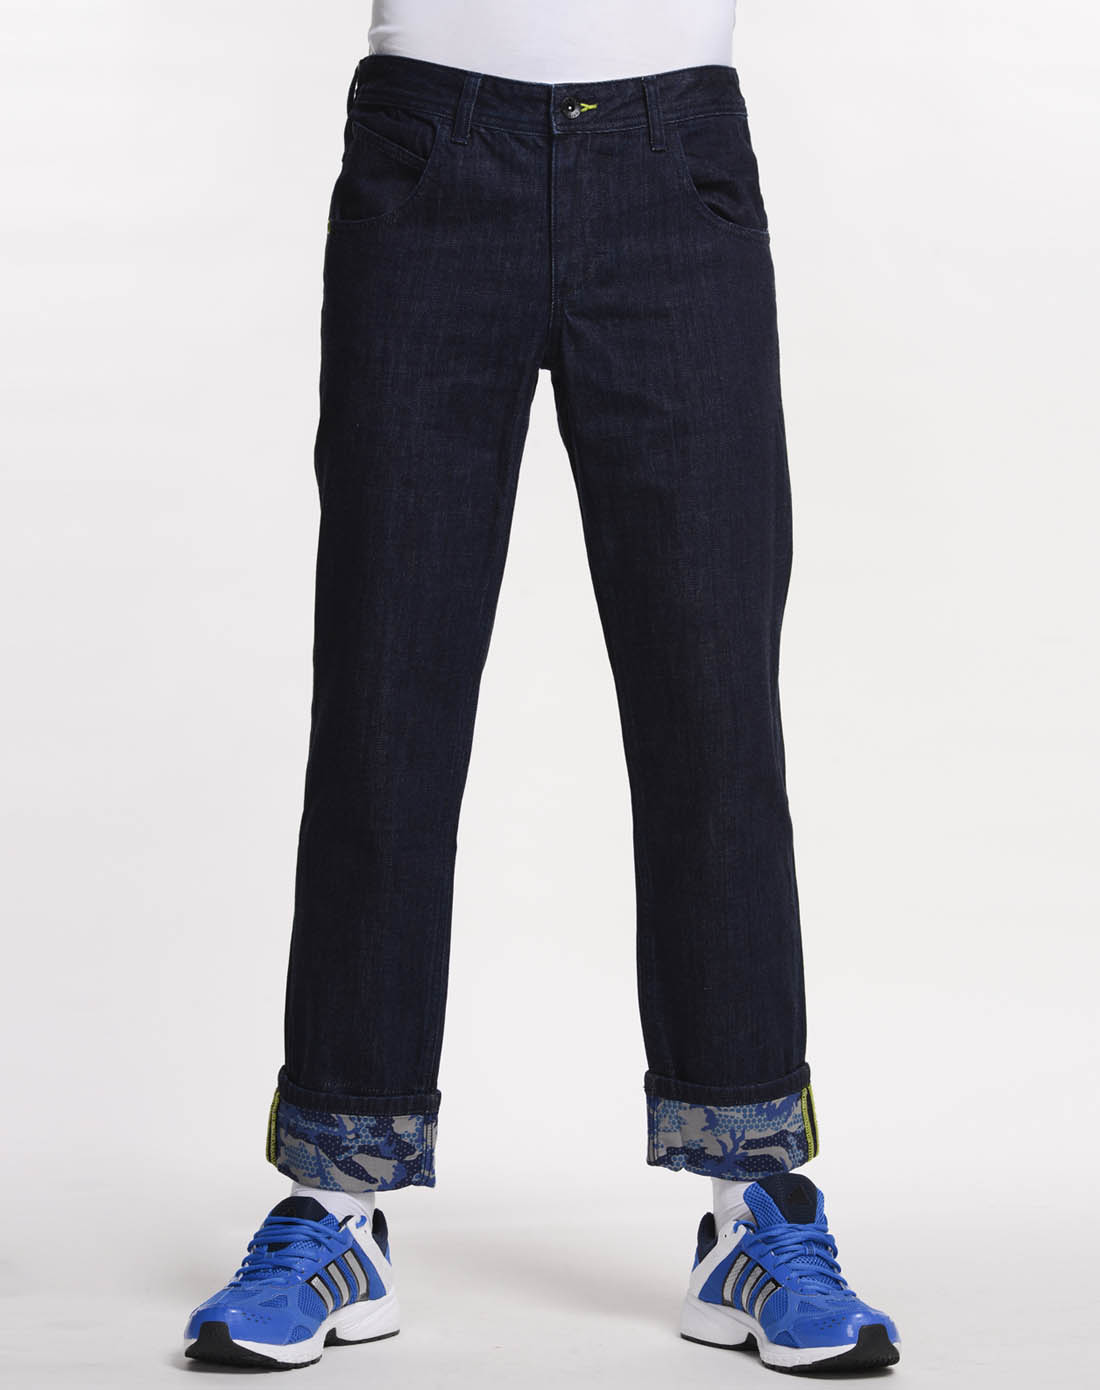 阿迪达斯adidas男子蓝黑色牛仔裤X58722